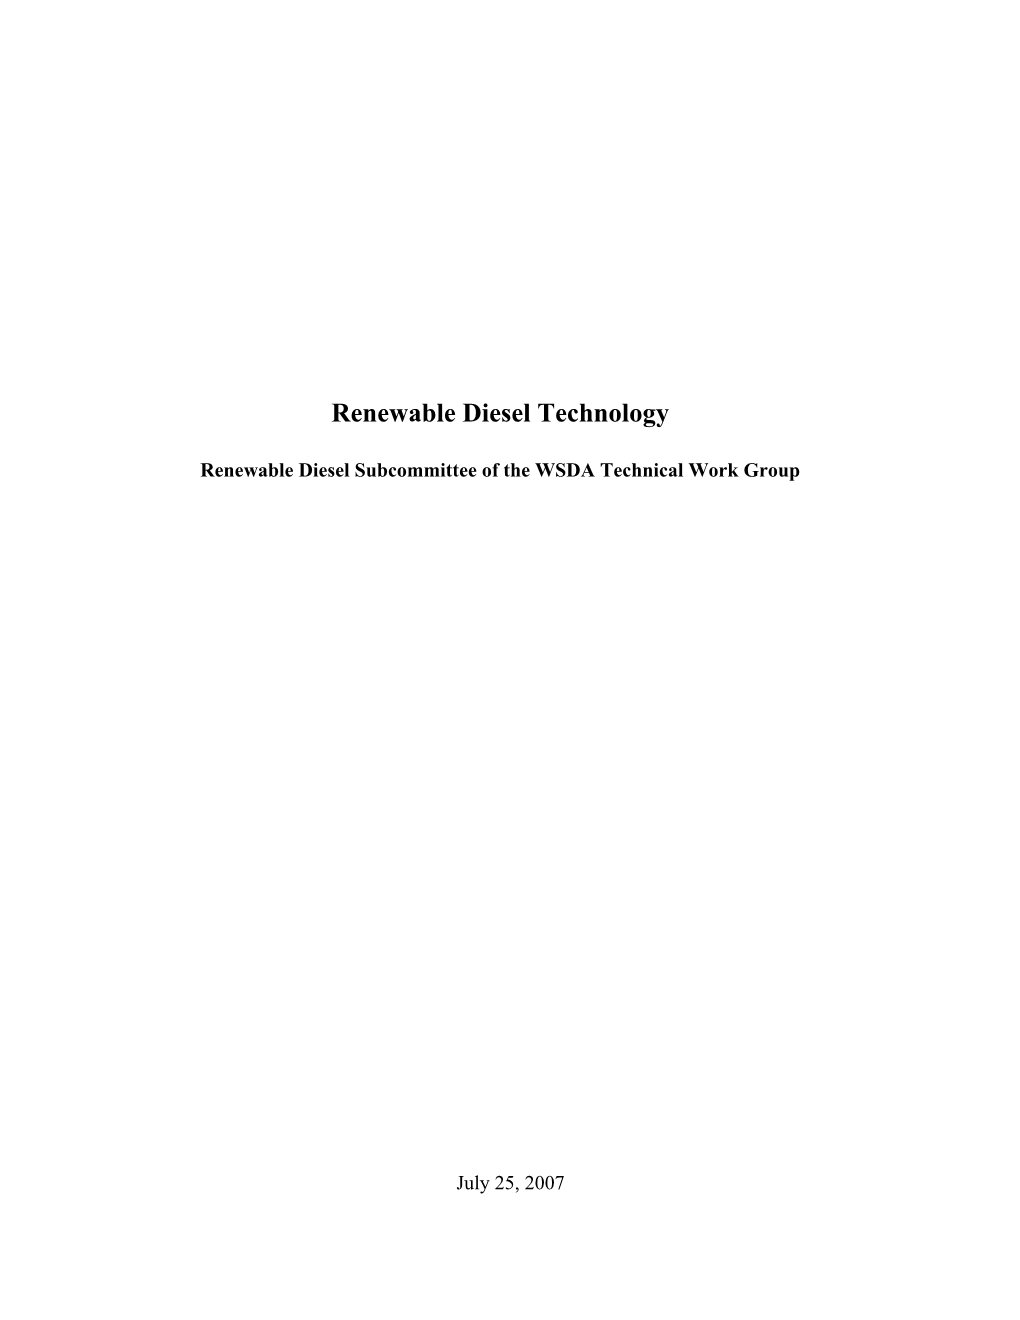 Biodiesel and Renewable Diesel Definitions